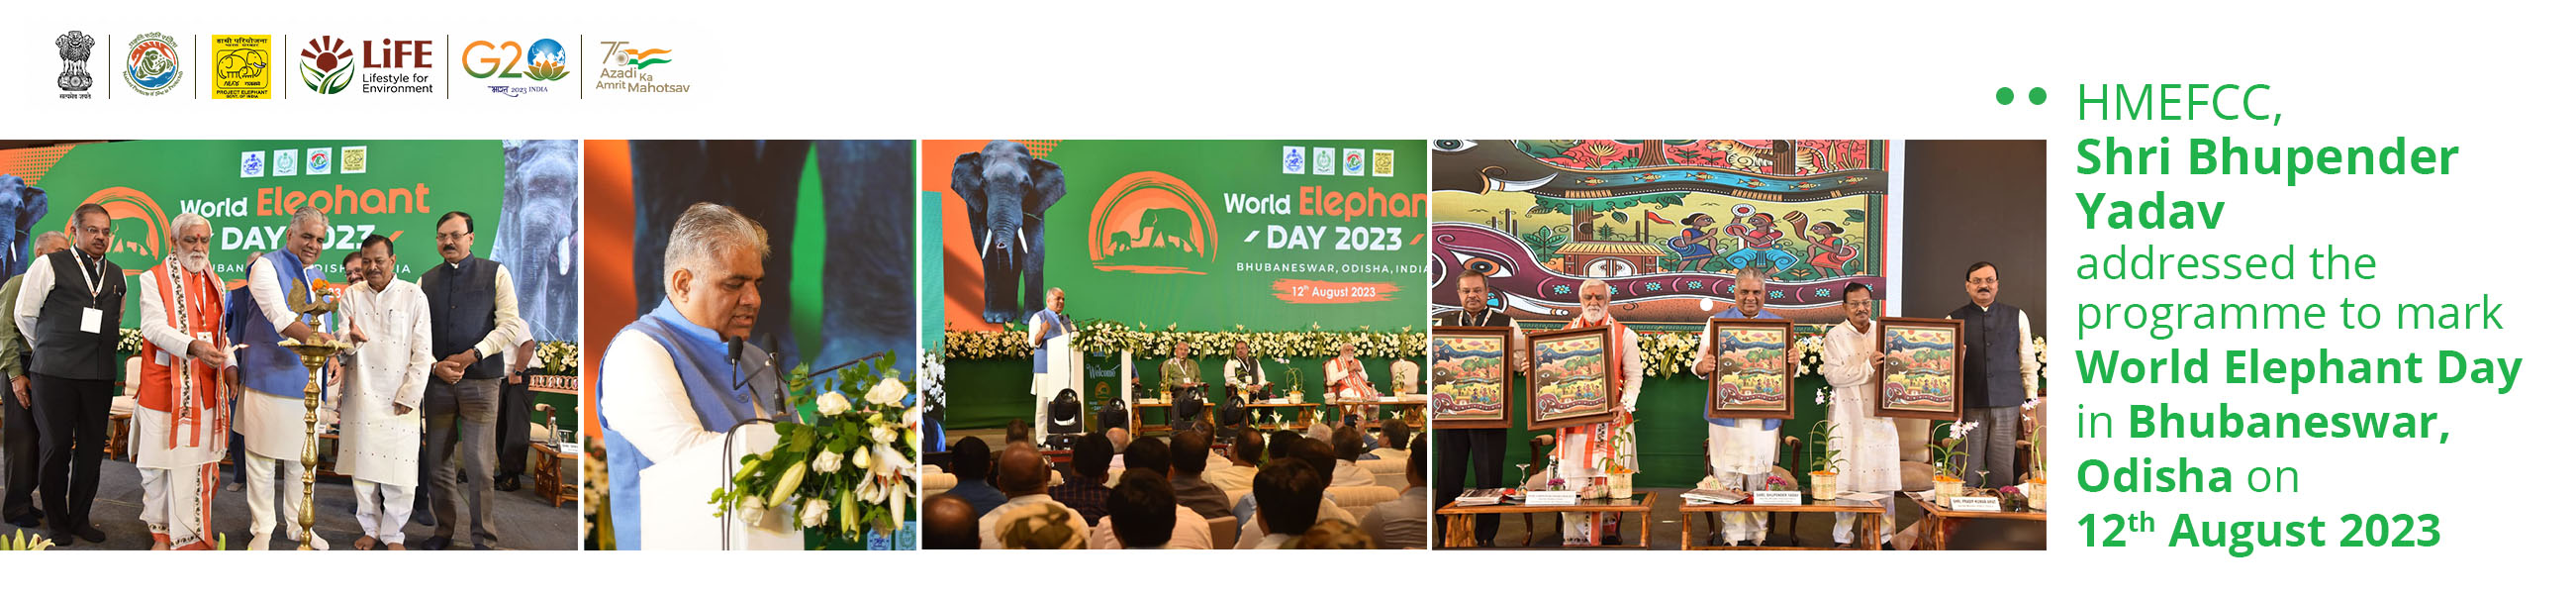 Banner – Celebration of World Elephant Day at Bhubaneswar, Odisha on 13-08-2023